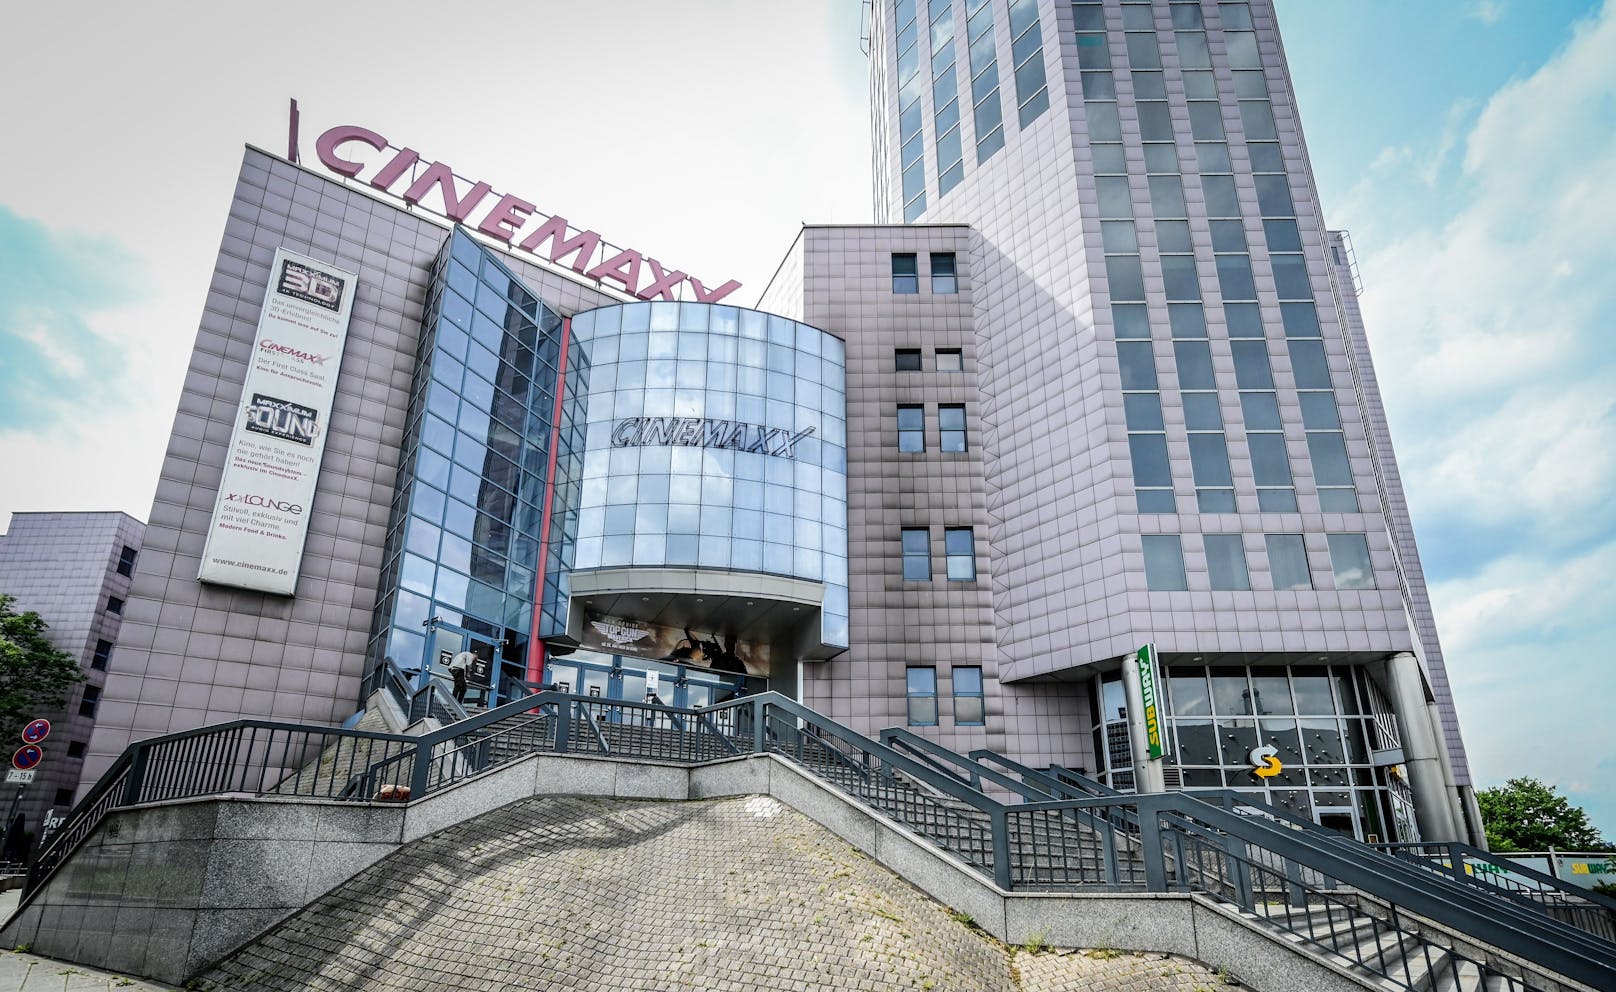 Die Polizei musste das "Cinemaxx" Kino in Essen räumen.